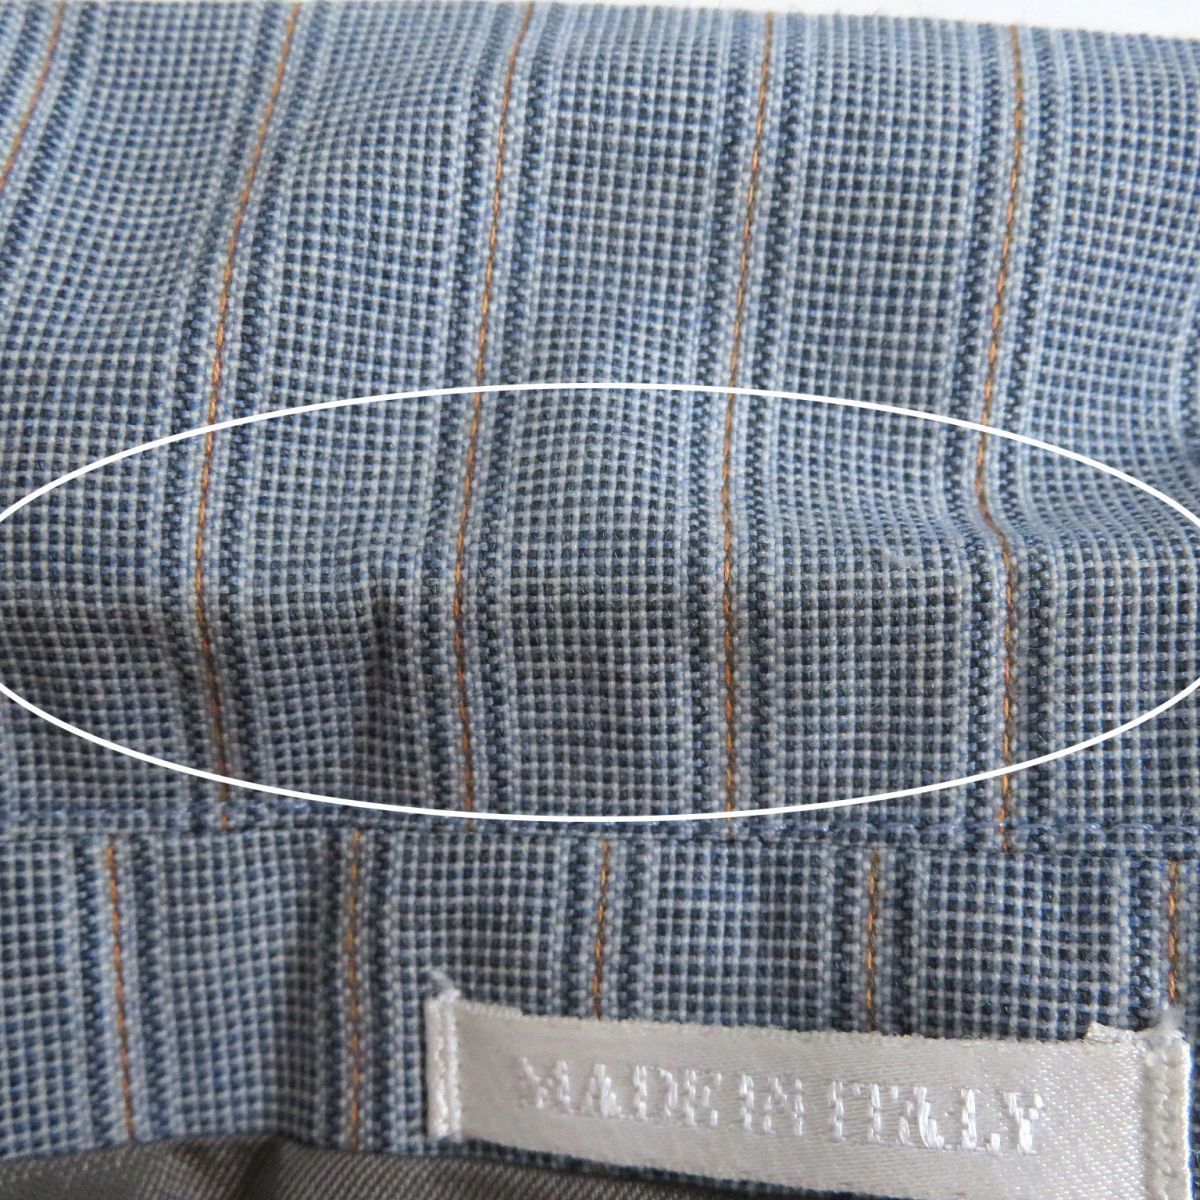 美品□アレキサンダーマックイーン ストライプ柄 ウール シングルスーツ セットアップ ブルー系 44 イタリア製 正規品